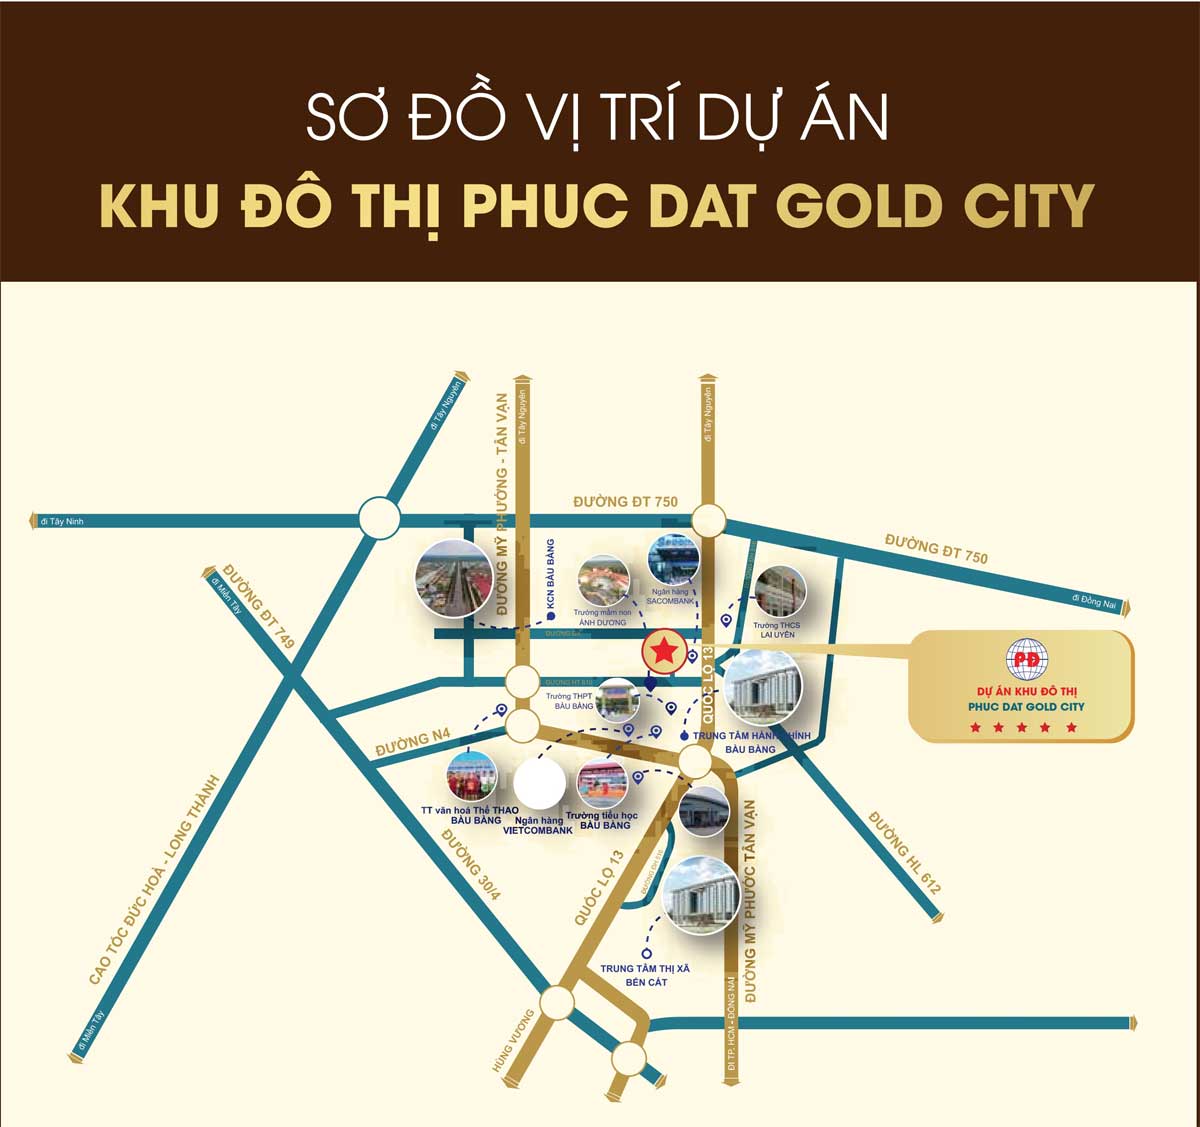 Vi tri Du an Phuc Dat Gold City - Phúc Đạt Gold City